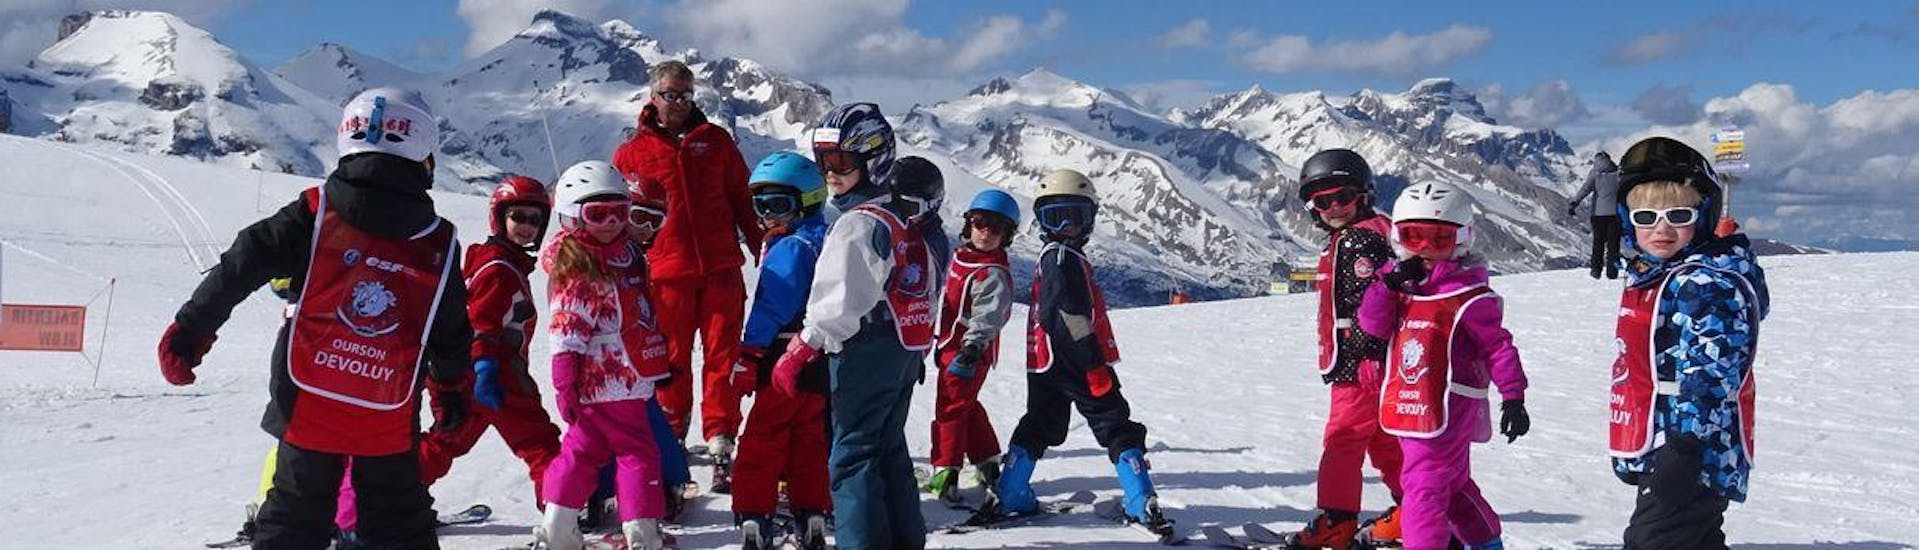 Lezioni di sci per bambini a partire da 6 anni.